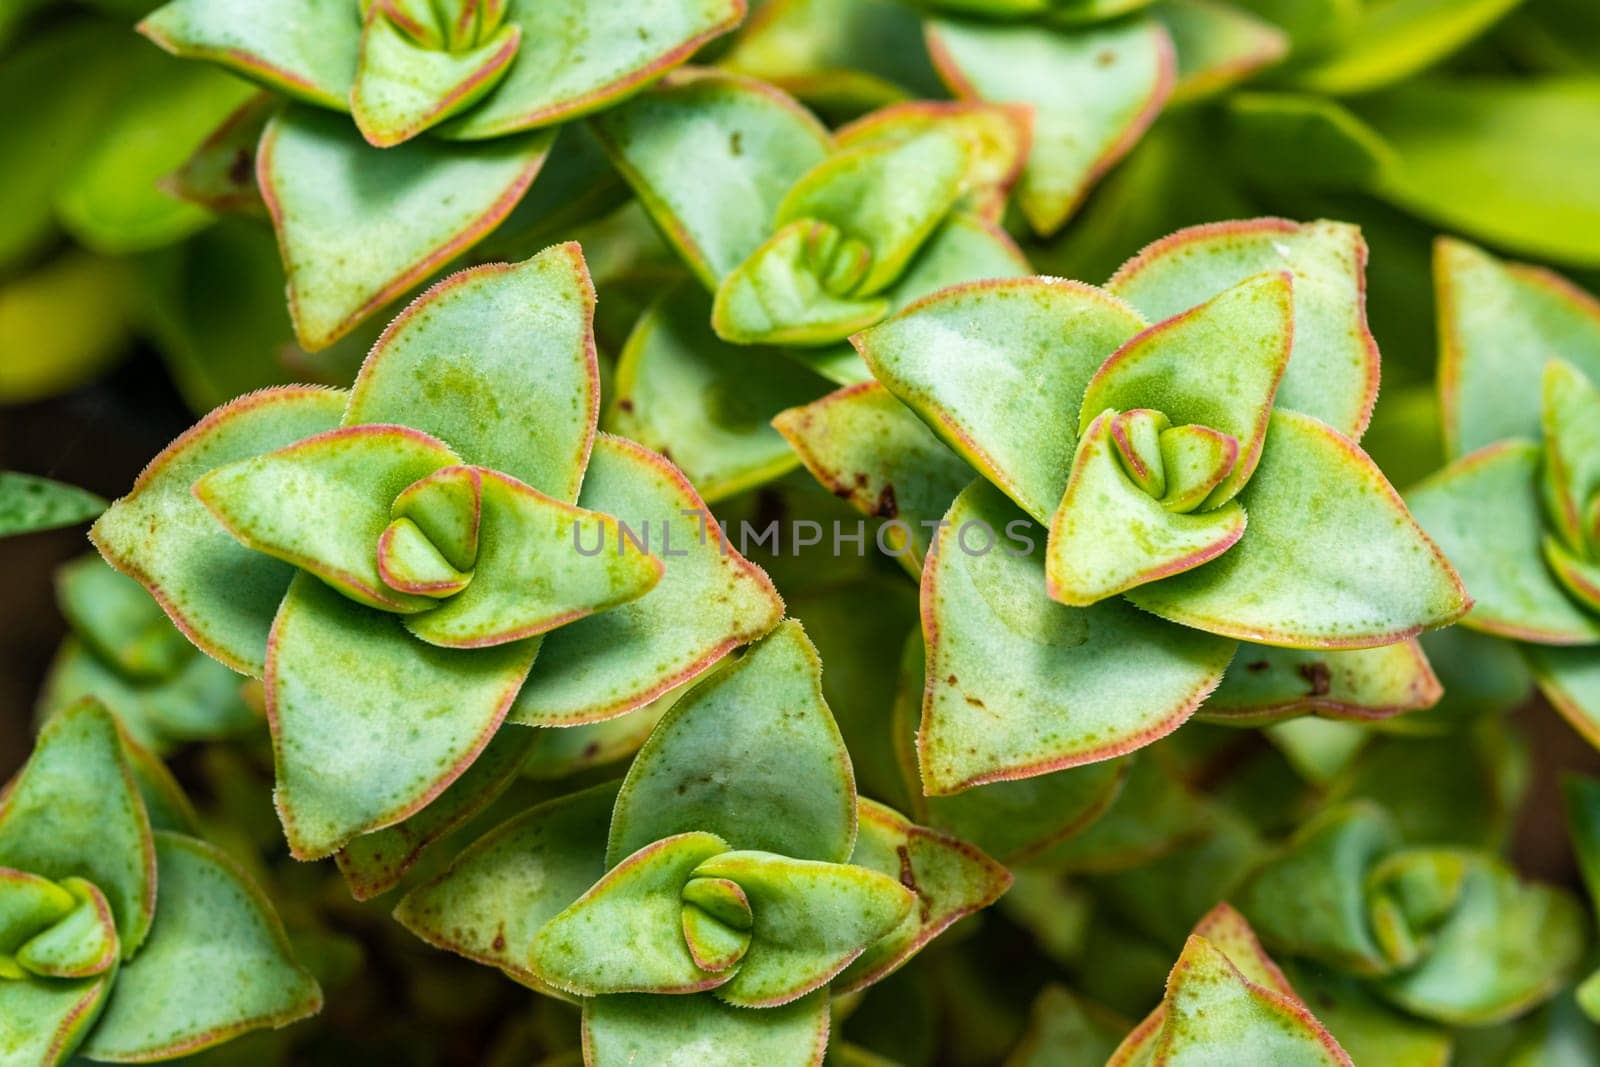 (Crassula perforata, Crassulaceae) succulent plant with succulent leaves 